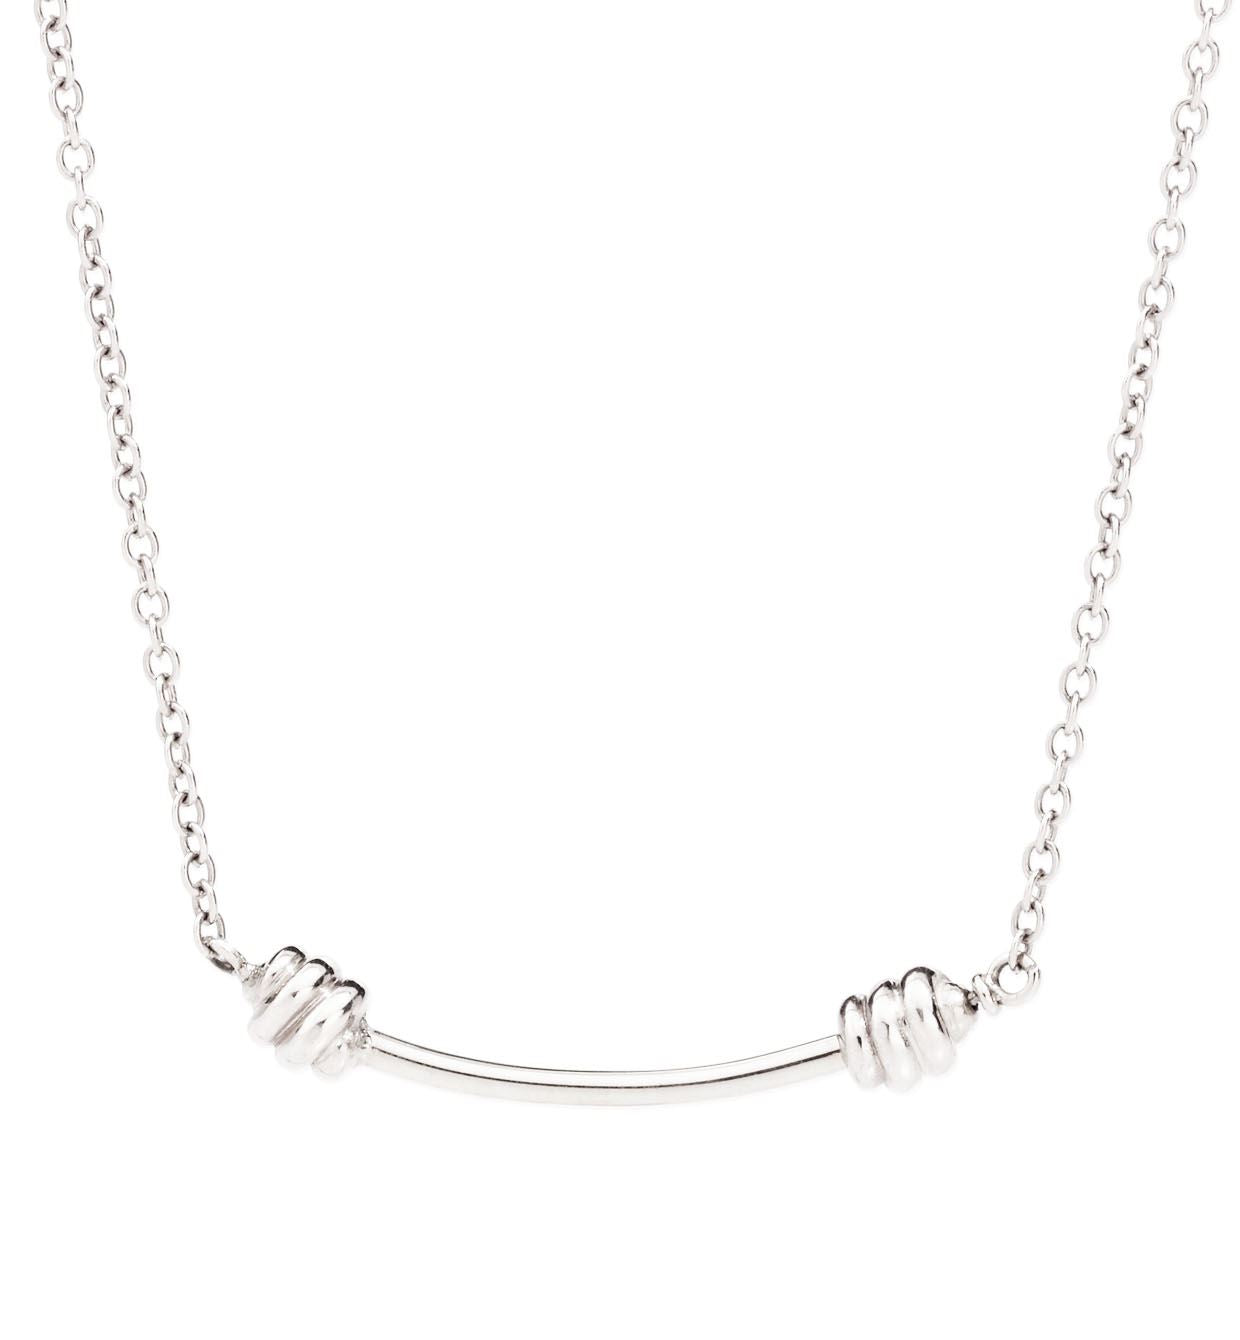 DoDo Nodo Knot Necklace in Silver - Orsini Jewellers NZ